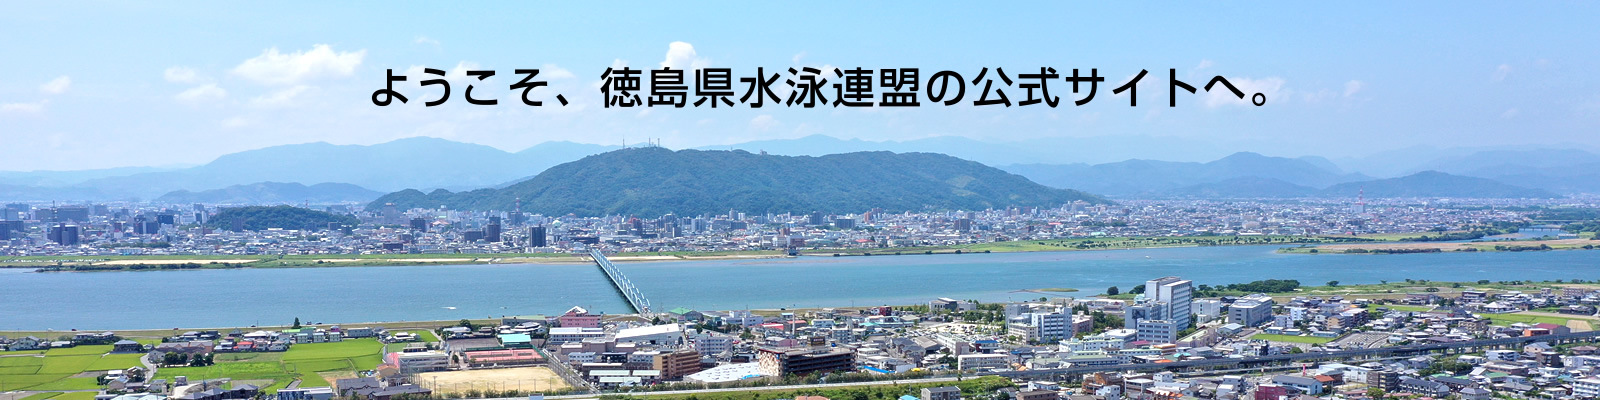 ようこそ、徳島県水泳連盟の公式サイトへ。